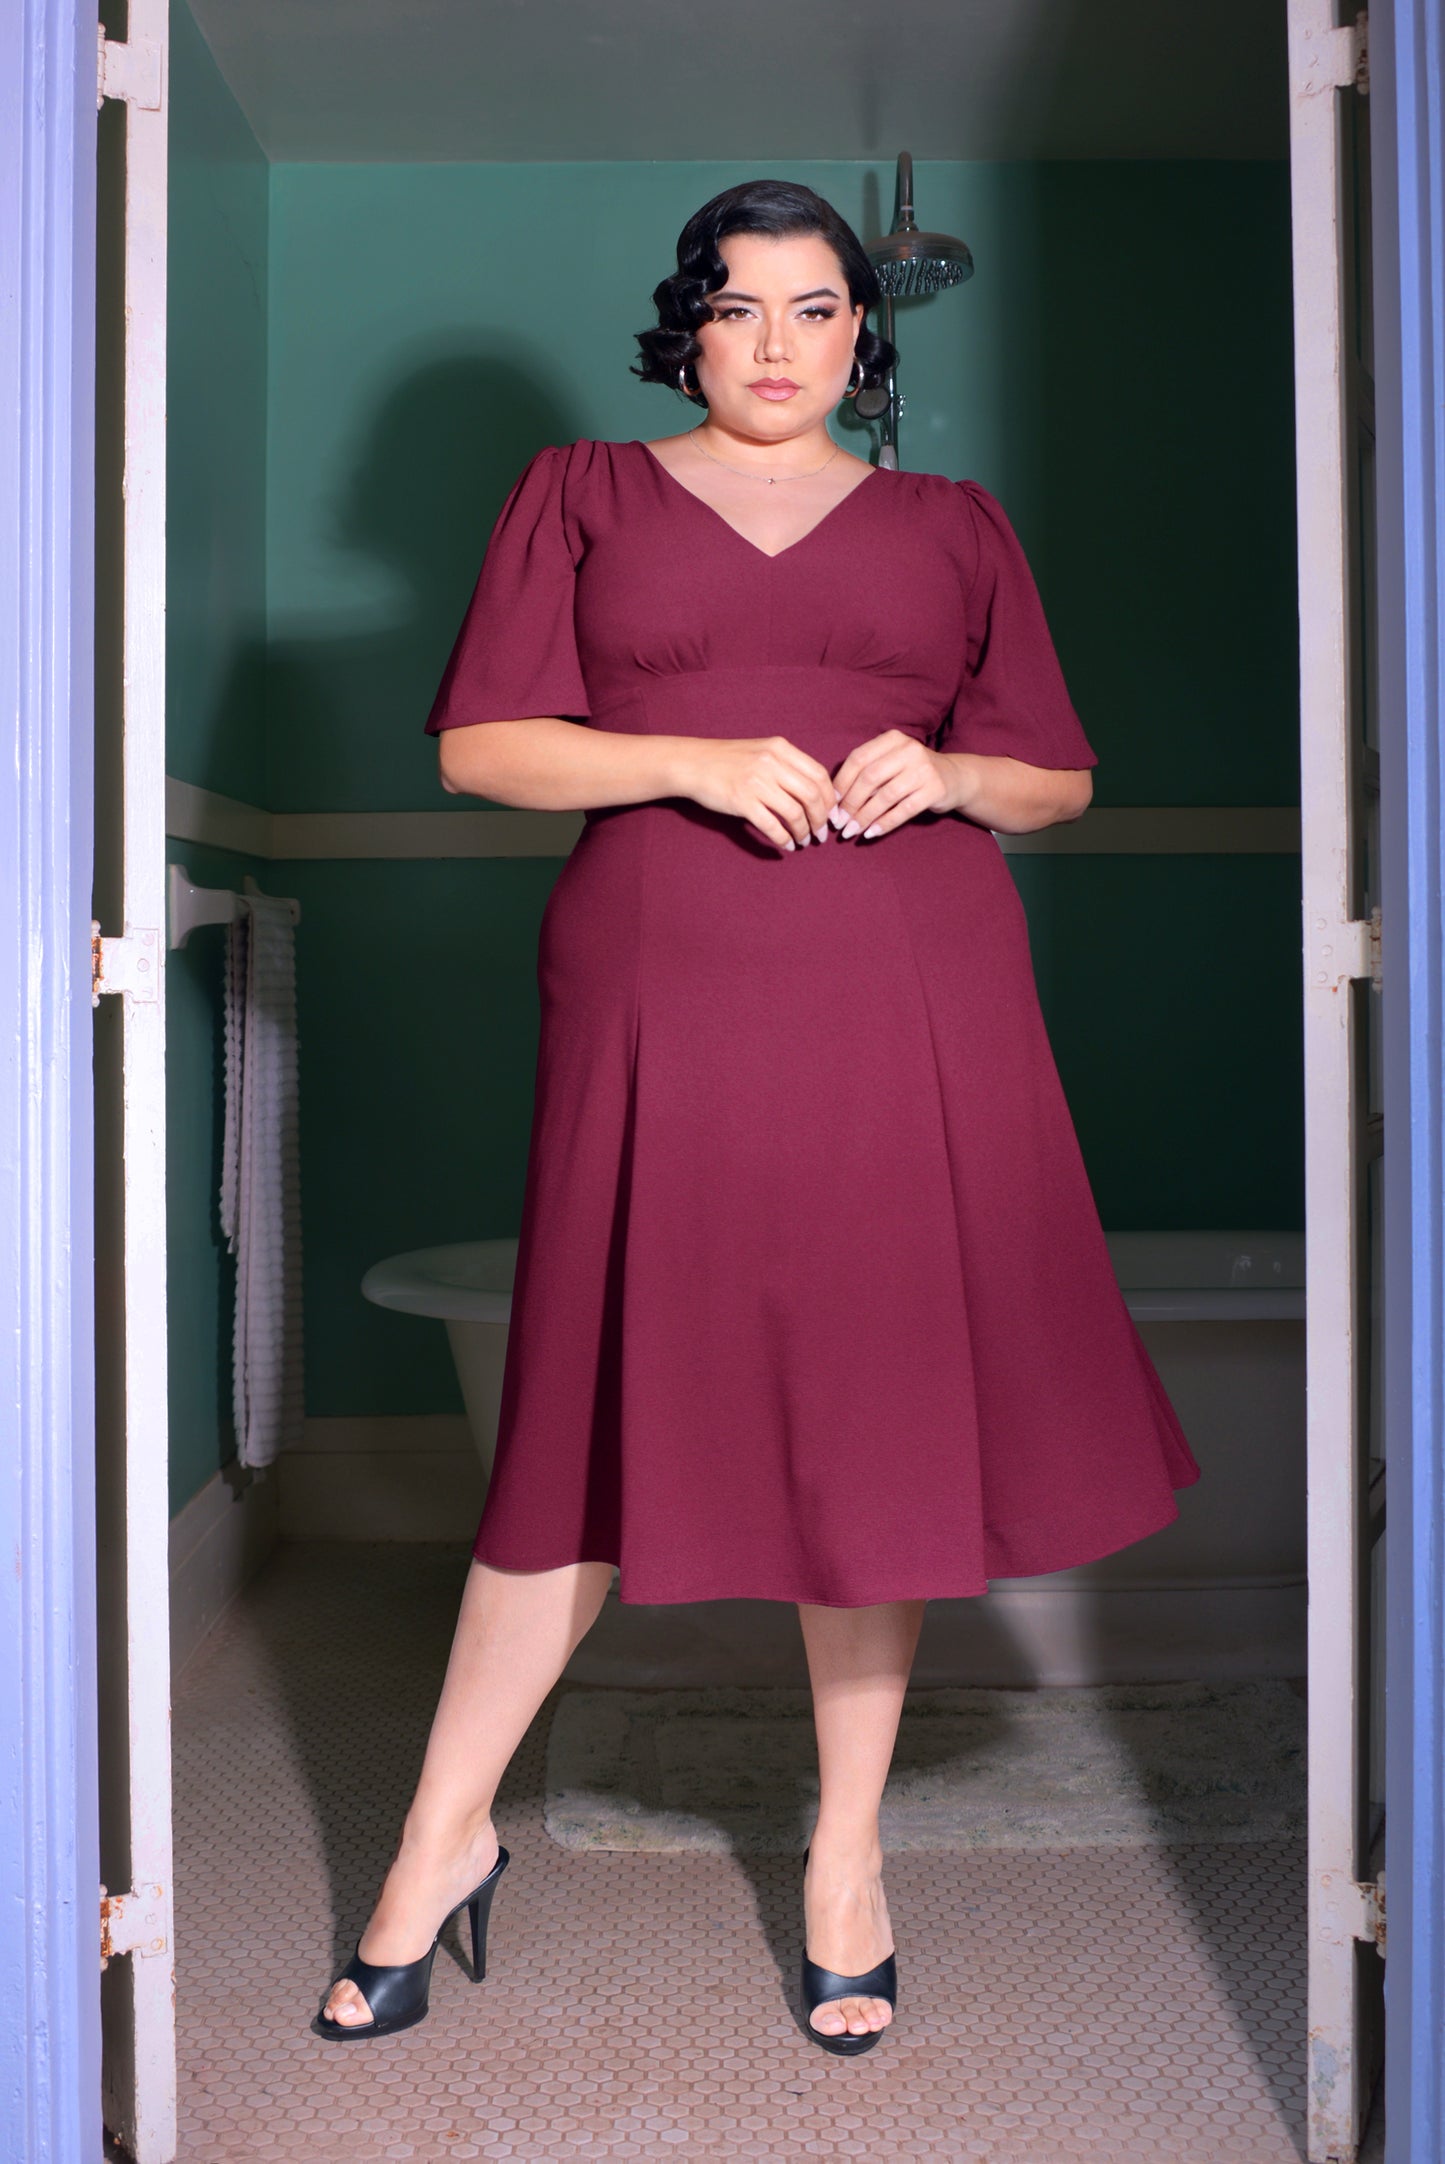 Viva 40s Flutter Sleeve Day Dress in Oxblood Stretch Crepe | Laura Byrnes Design